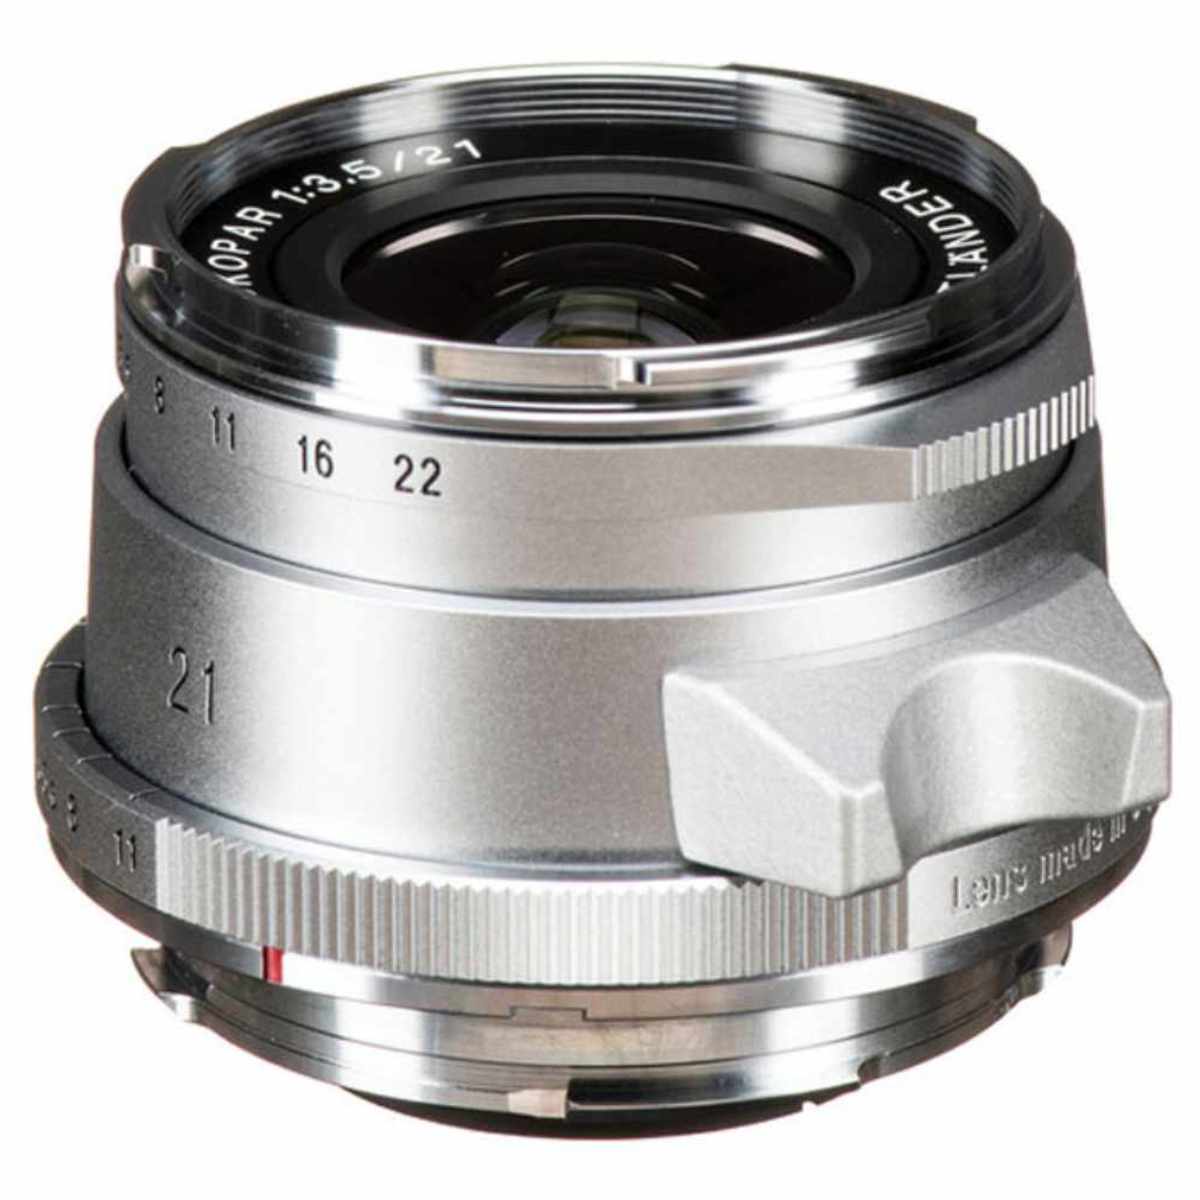 Voigtlaender Color-Skopar 21mm f/3.5 Aspherical II VL Silver Leica-M